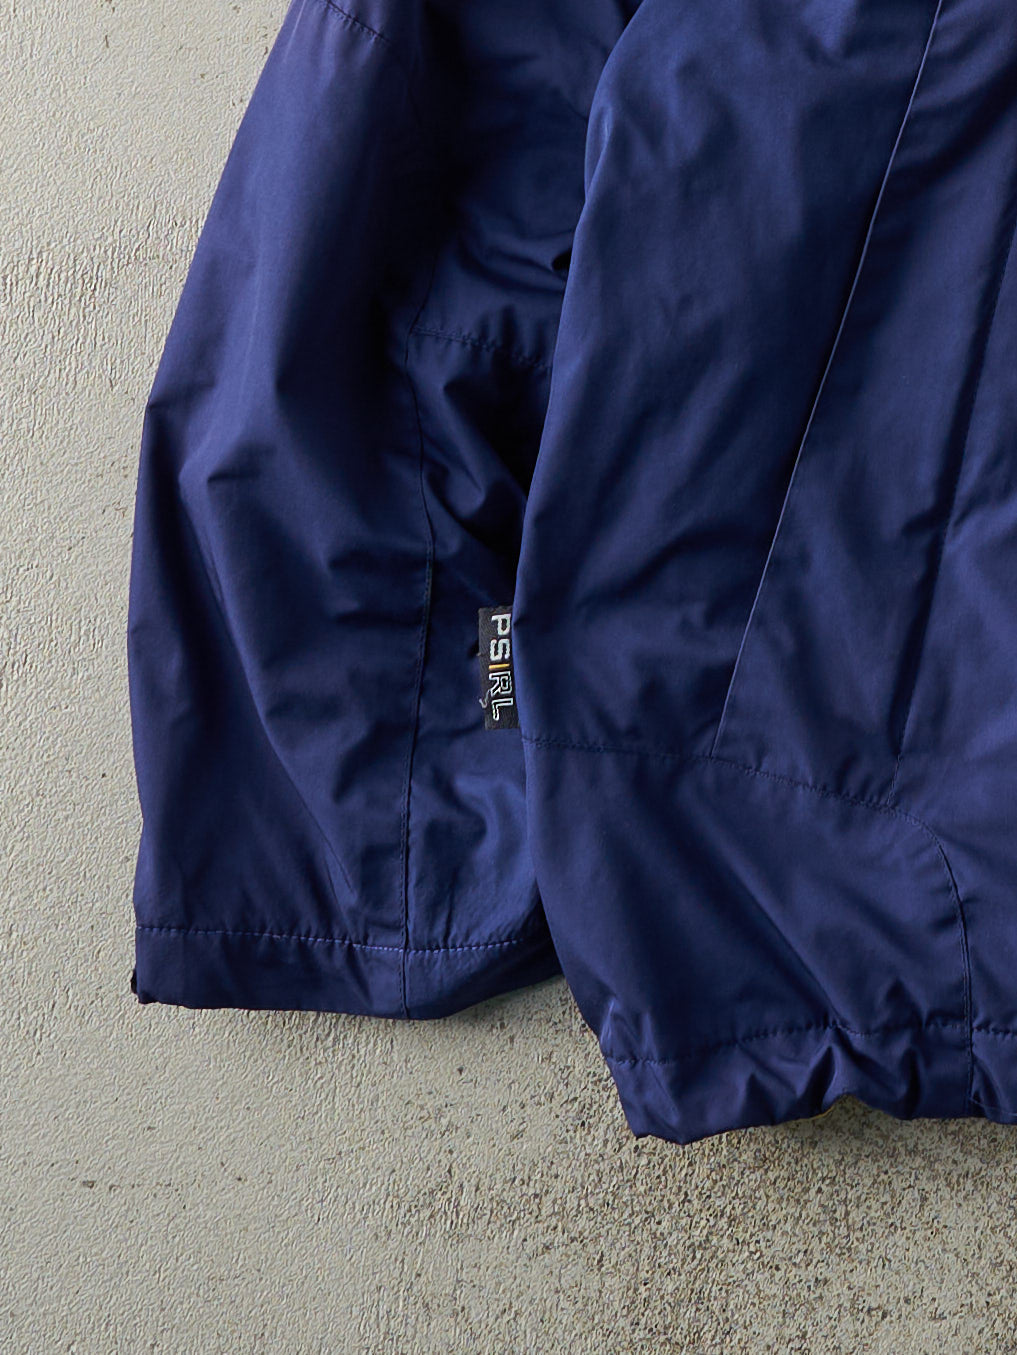 Vintage Y2K Navy Blue Polo Sport Ralph Lauren Windbreaker Jacket (M)